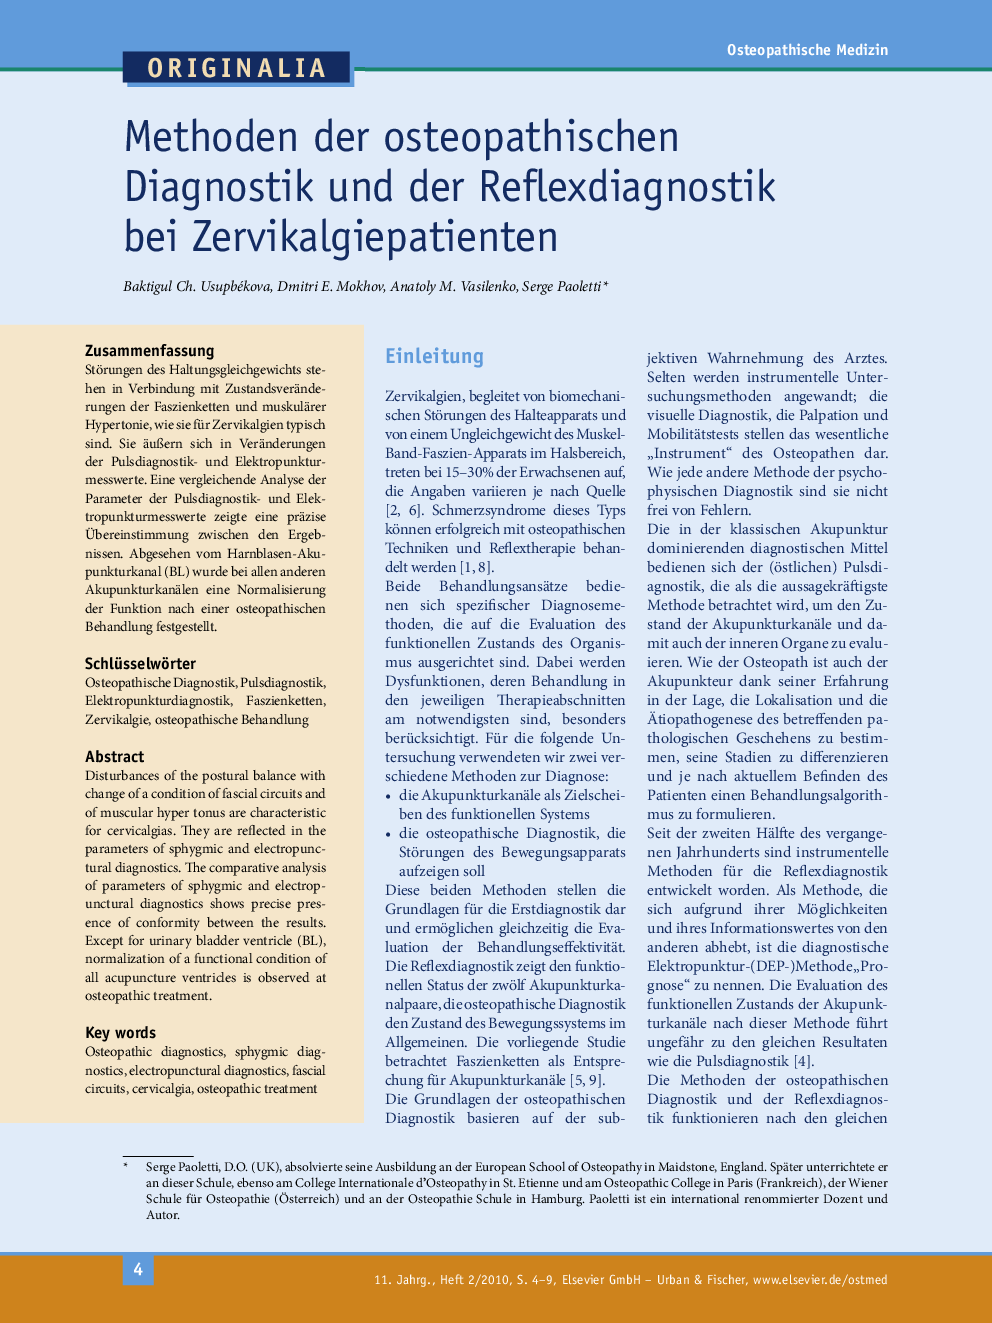 Methoden der osteopathischen Diagnostik und der Reflexdiagnostik bei Zervikalgiepatienten